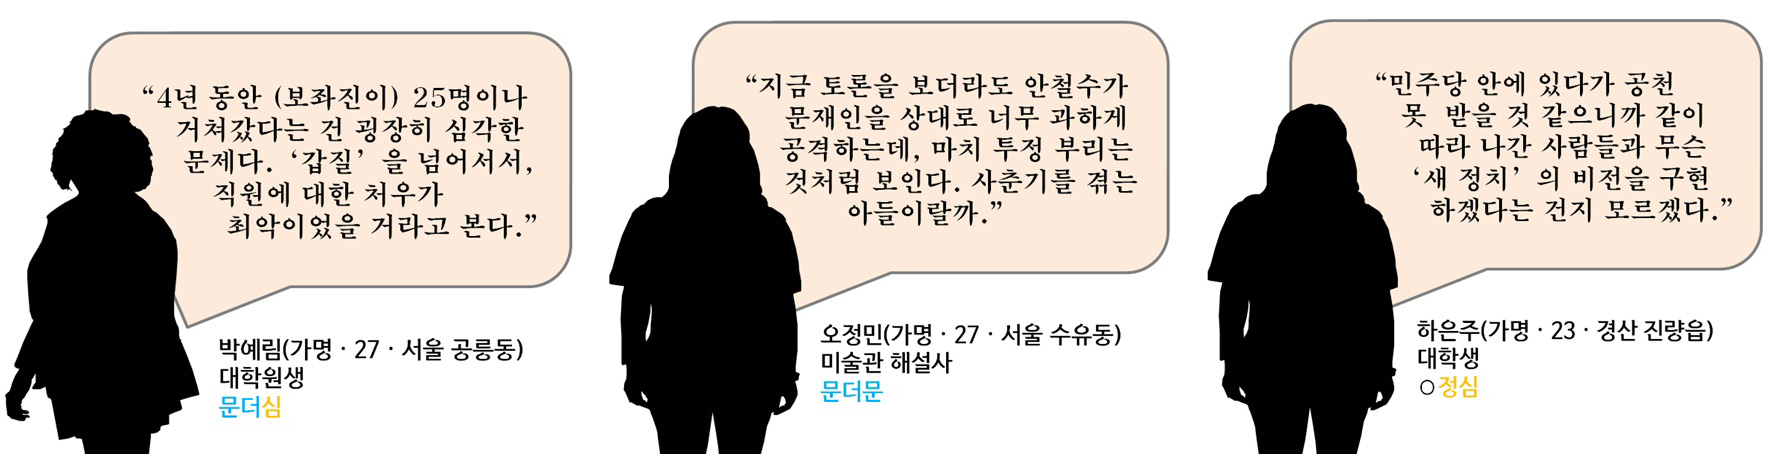 전화 인터뷰에 응한 청년 5인이 밝힌 '안철수 지지를 철회한 이유' (2)